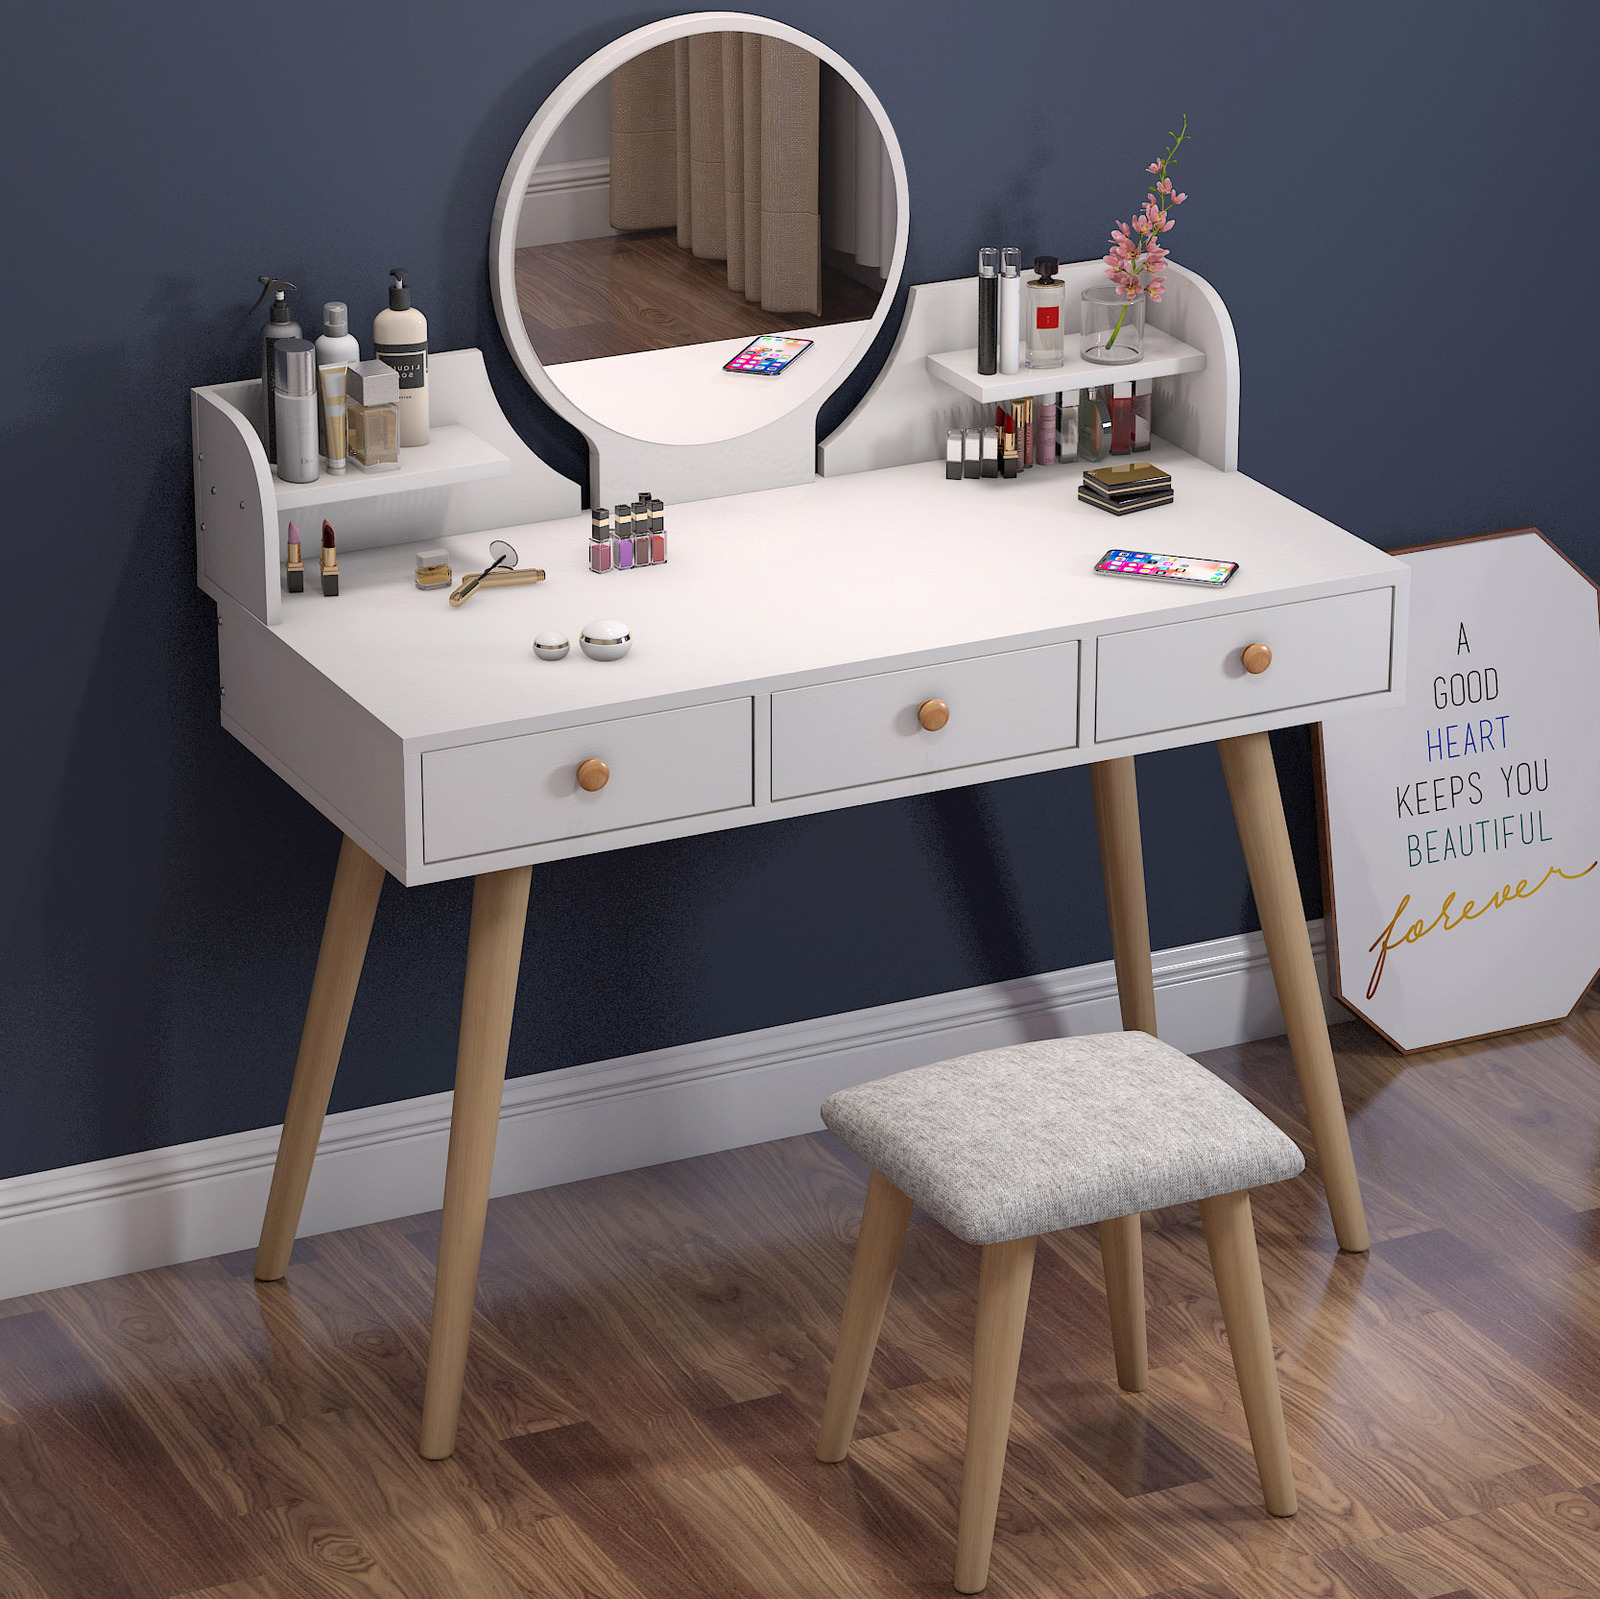 Queen Large Dresser Vanity Table With, Deluxe 2 Piece Vanity Set With Mirror